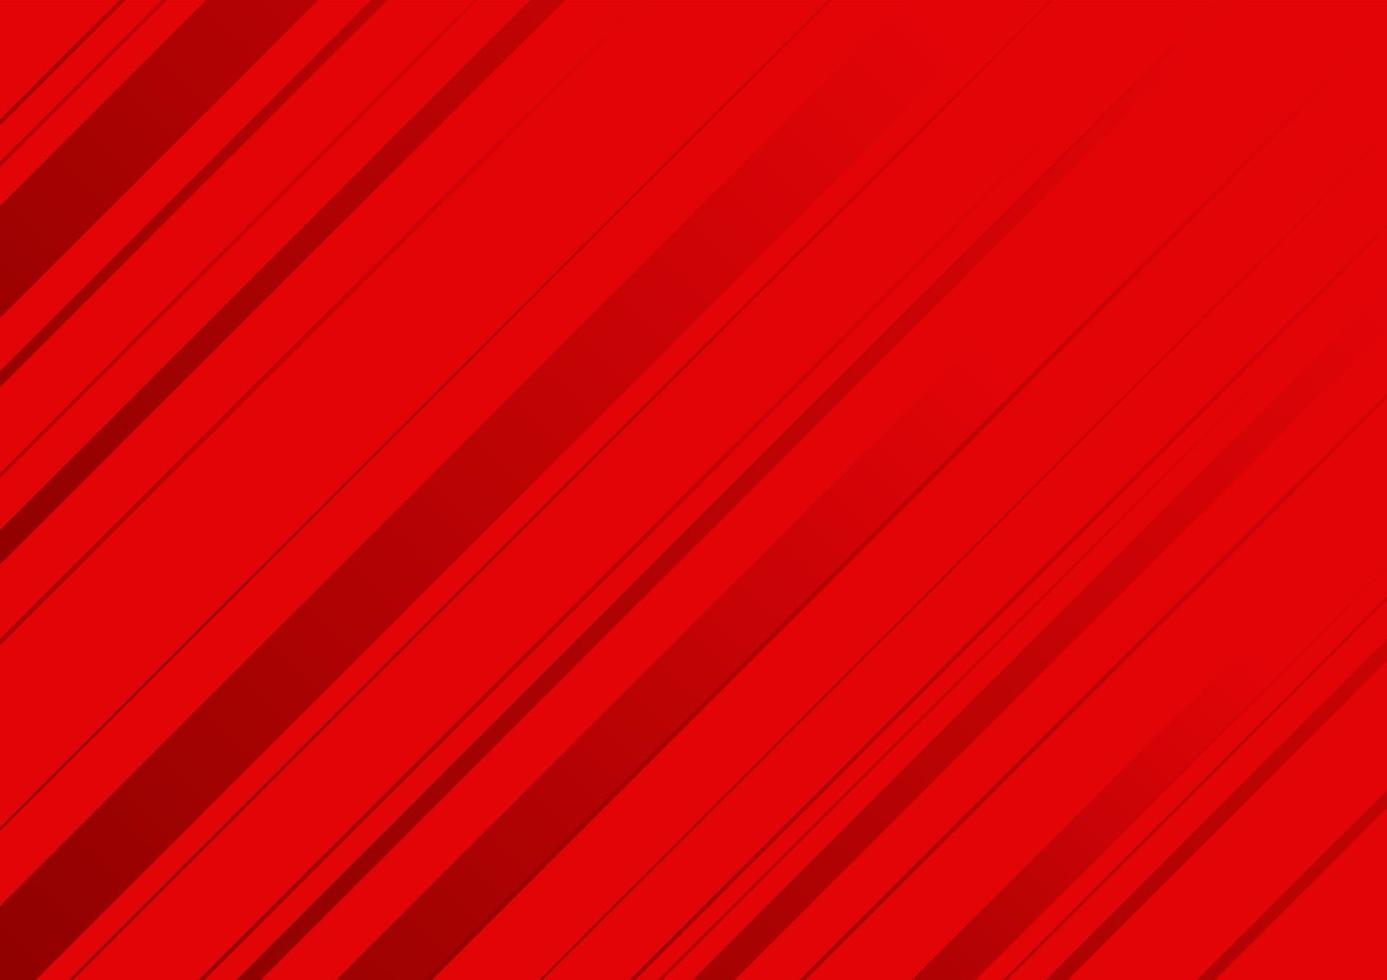 fundo vermelho abstrato com listras vermelhas. vetor